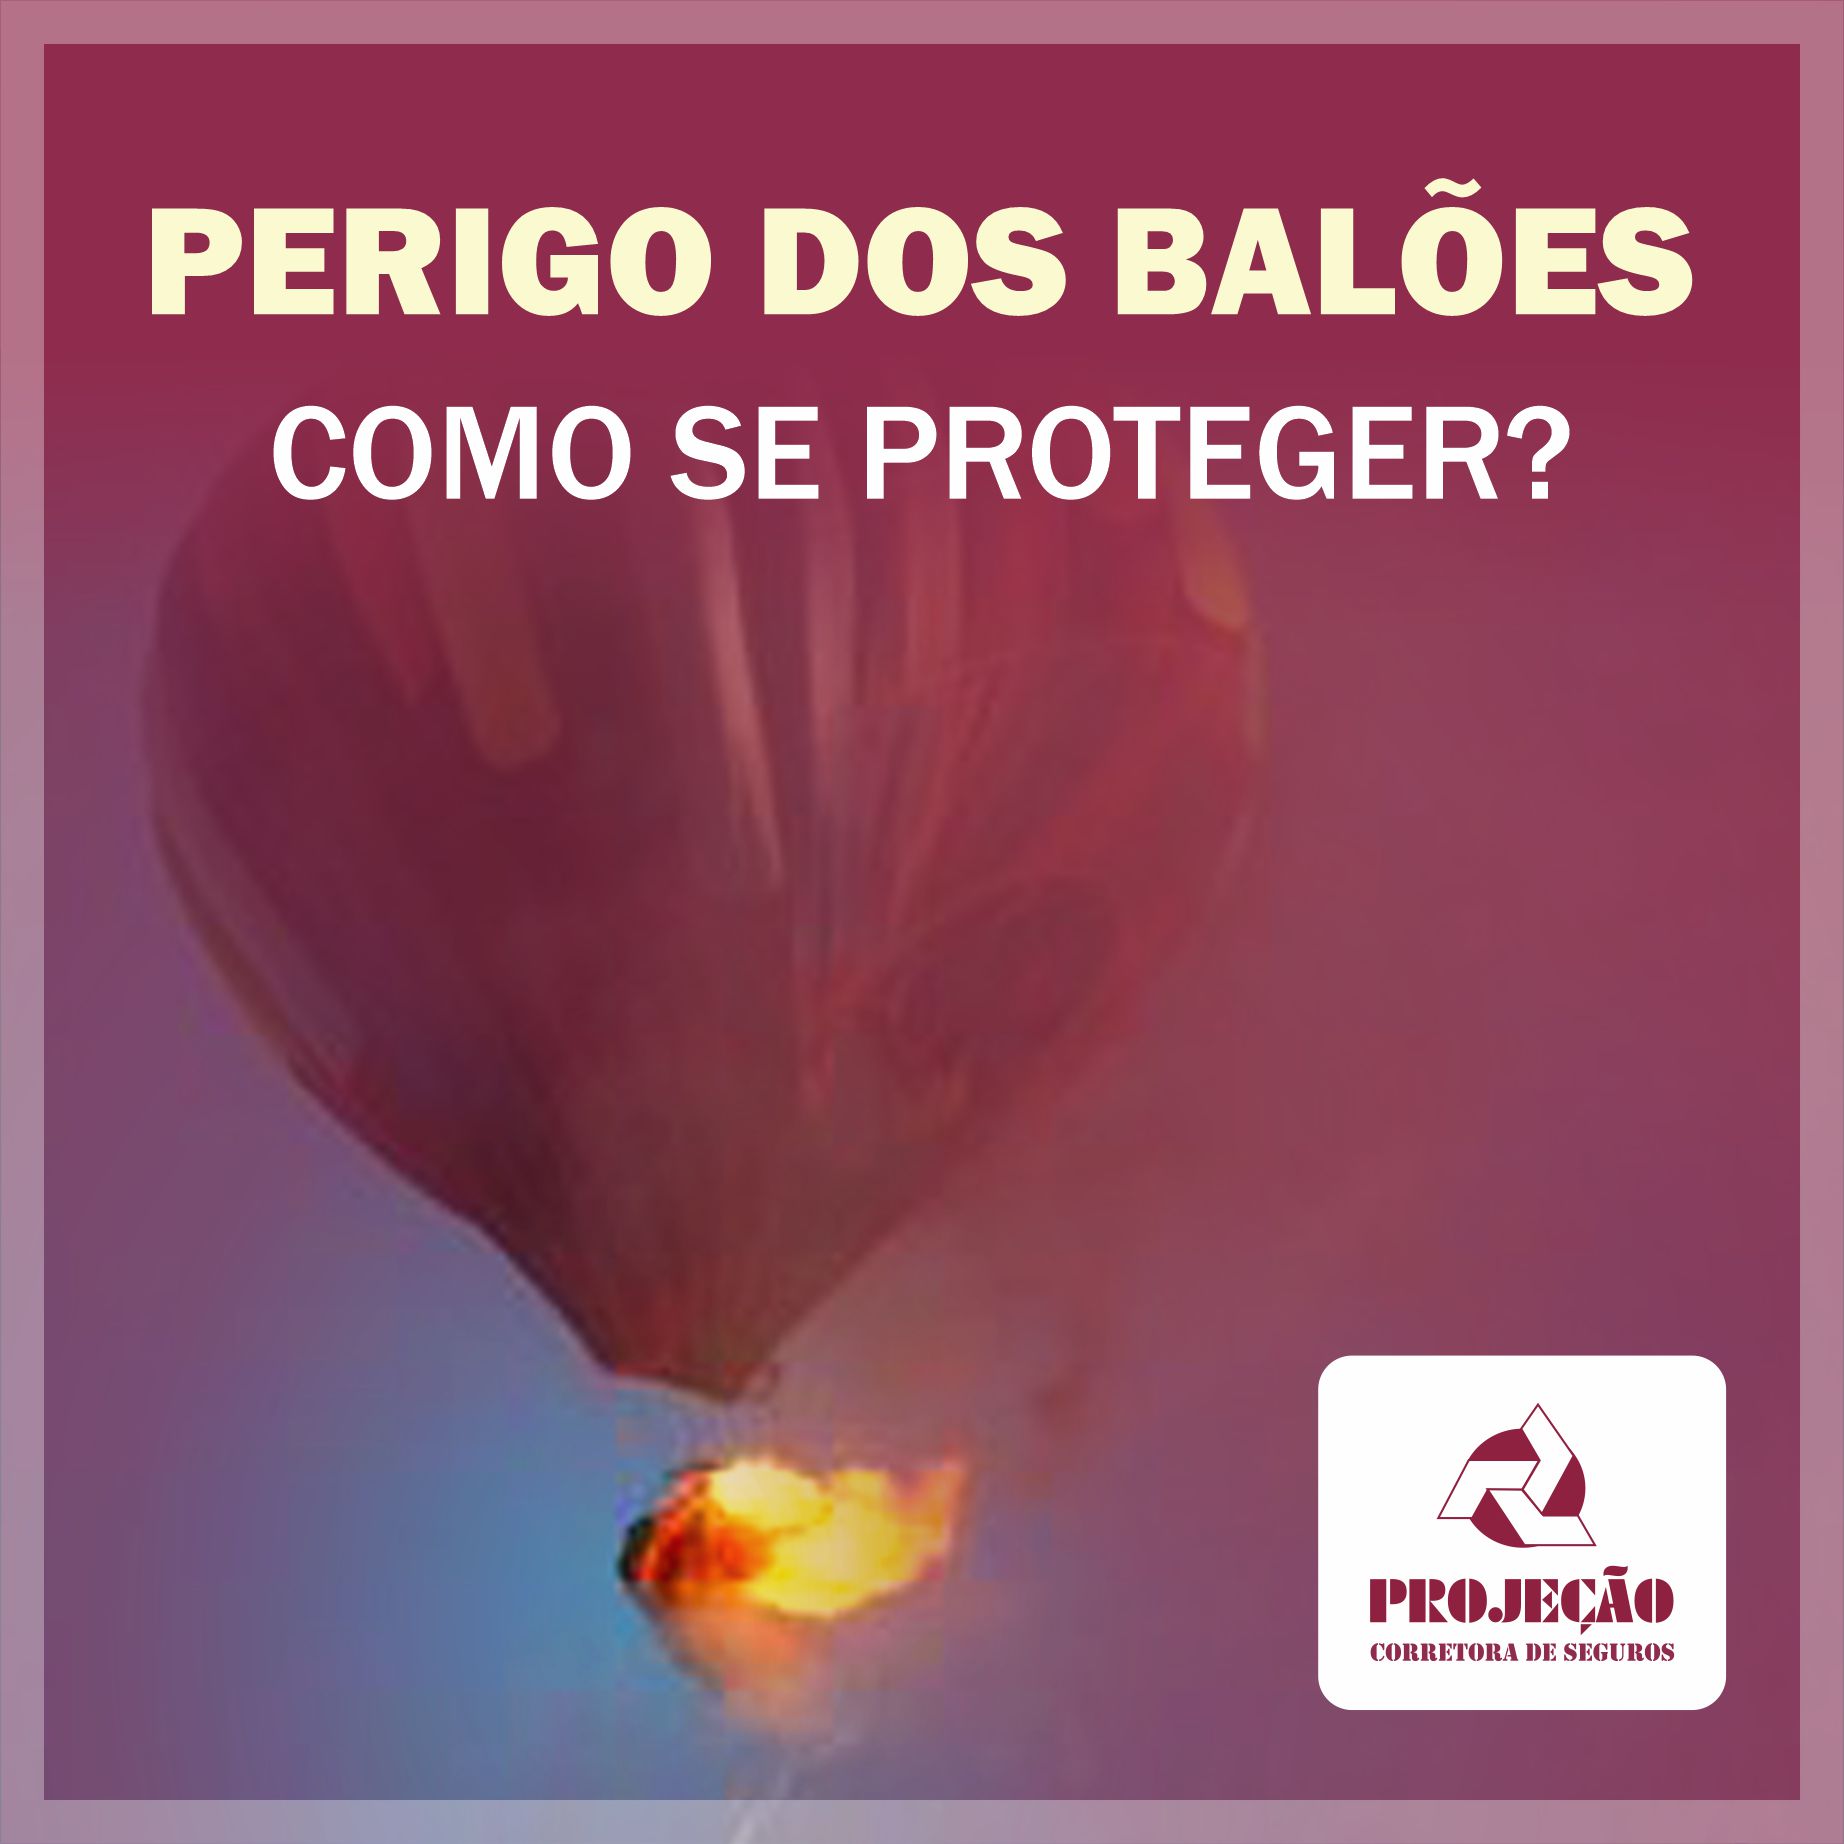 Perigo dos balões: Como se proteger?